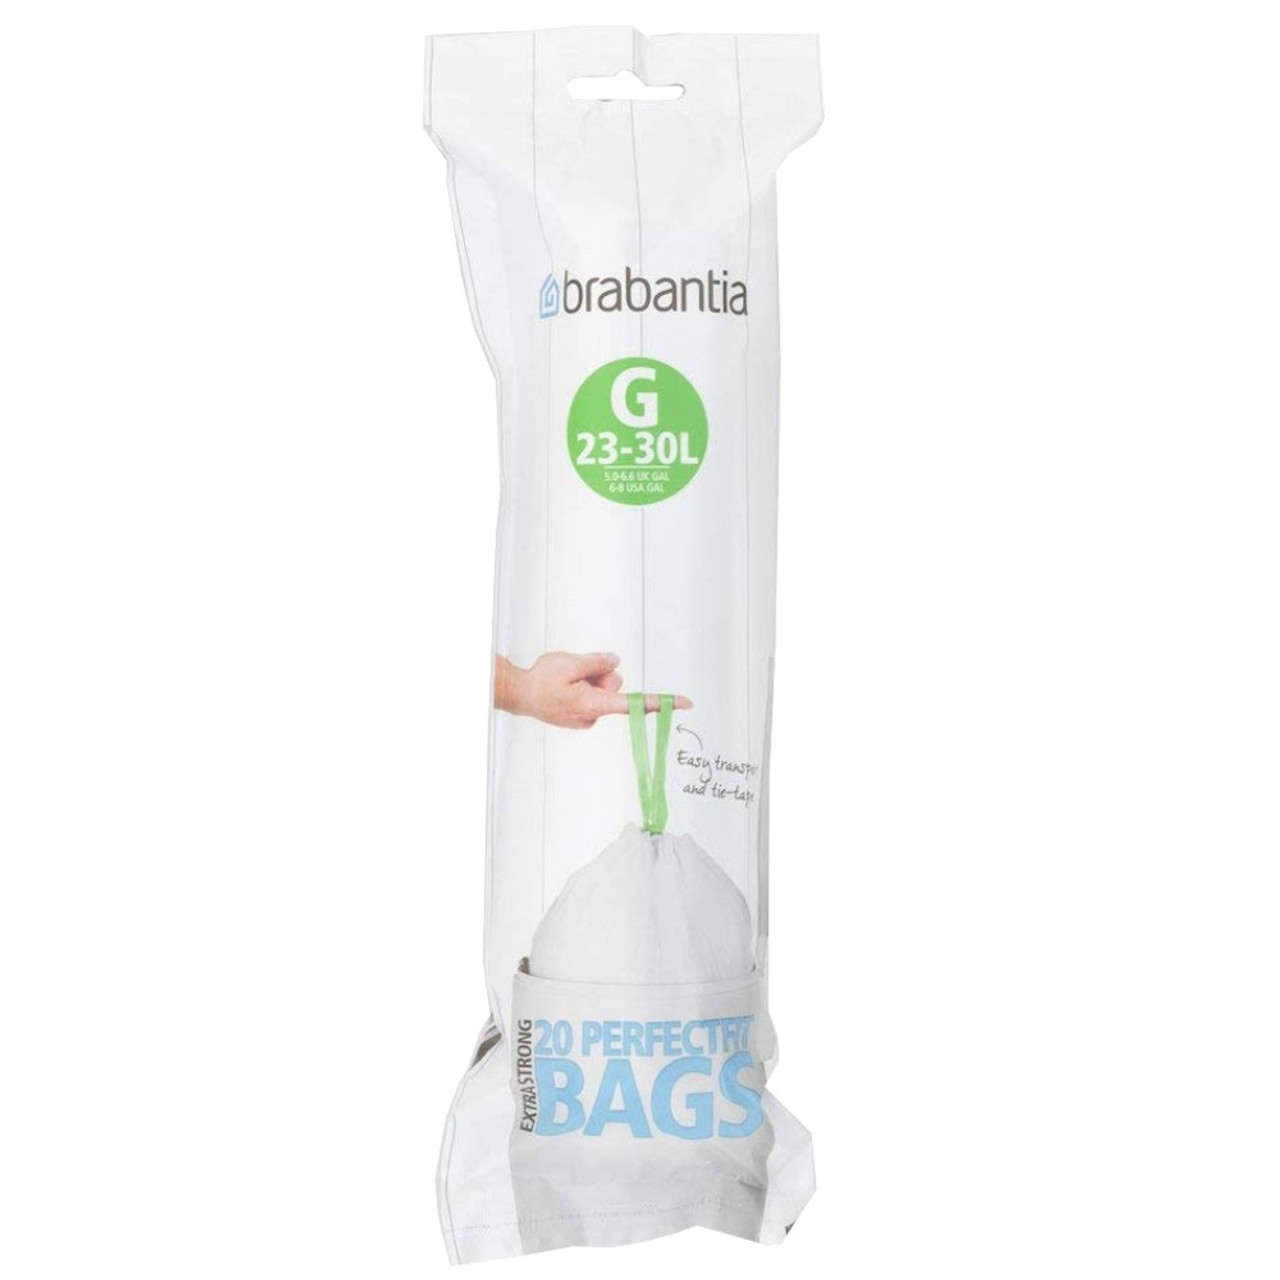 Brabantia Bin Liners G Bag 23-30L